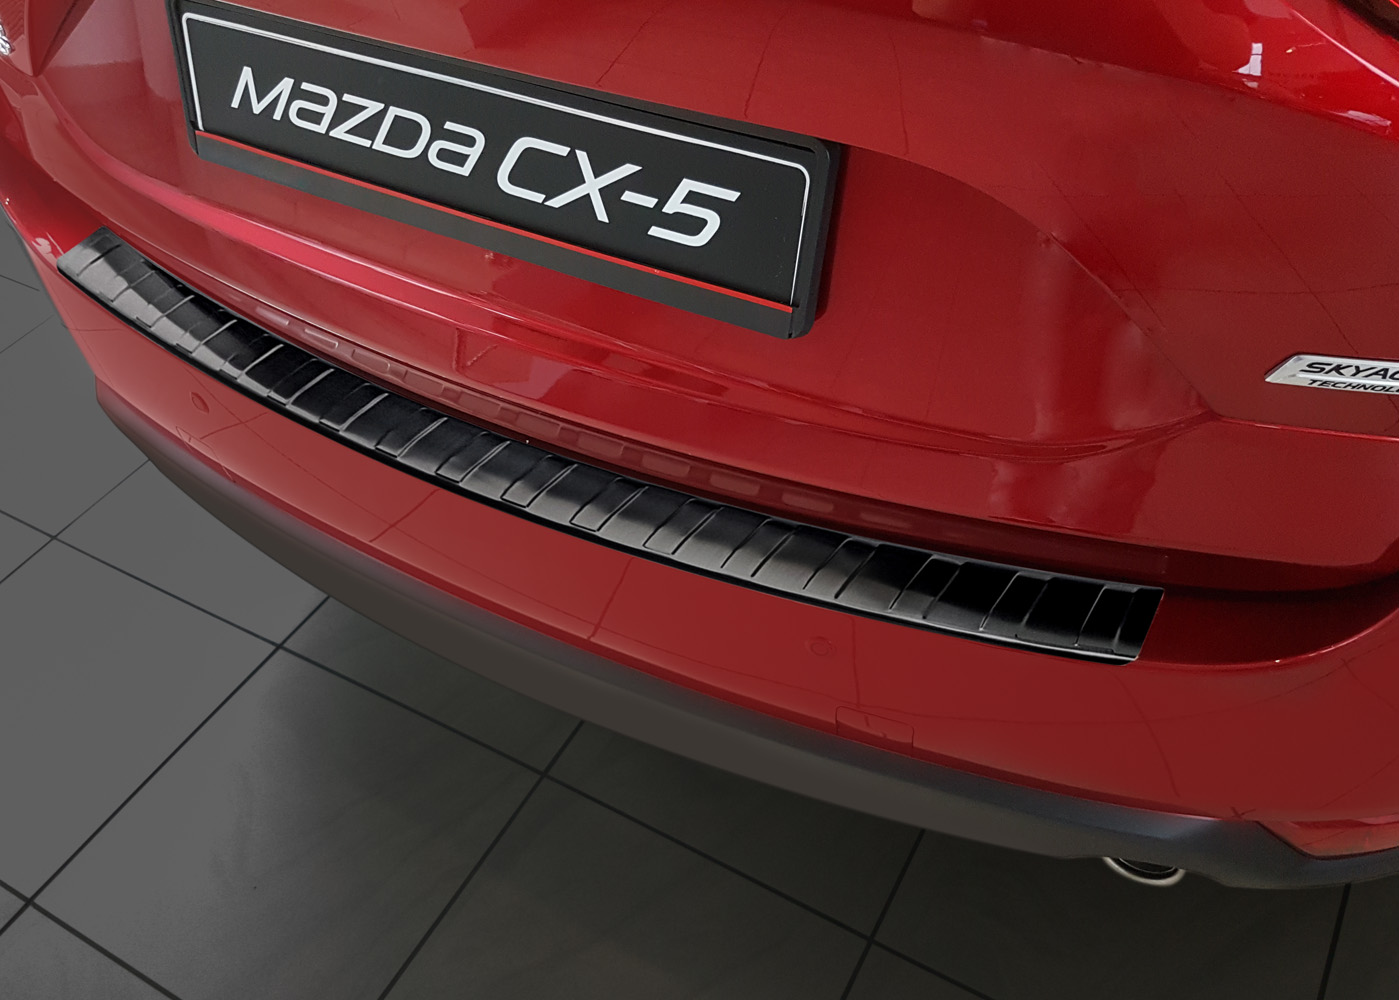 Ladekantenschutz für Mazda CX-5 - Schutz für die Ladekante Ihres Fahrzeuges | Abdeckblenden